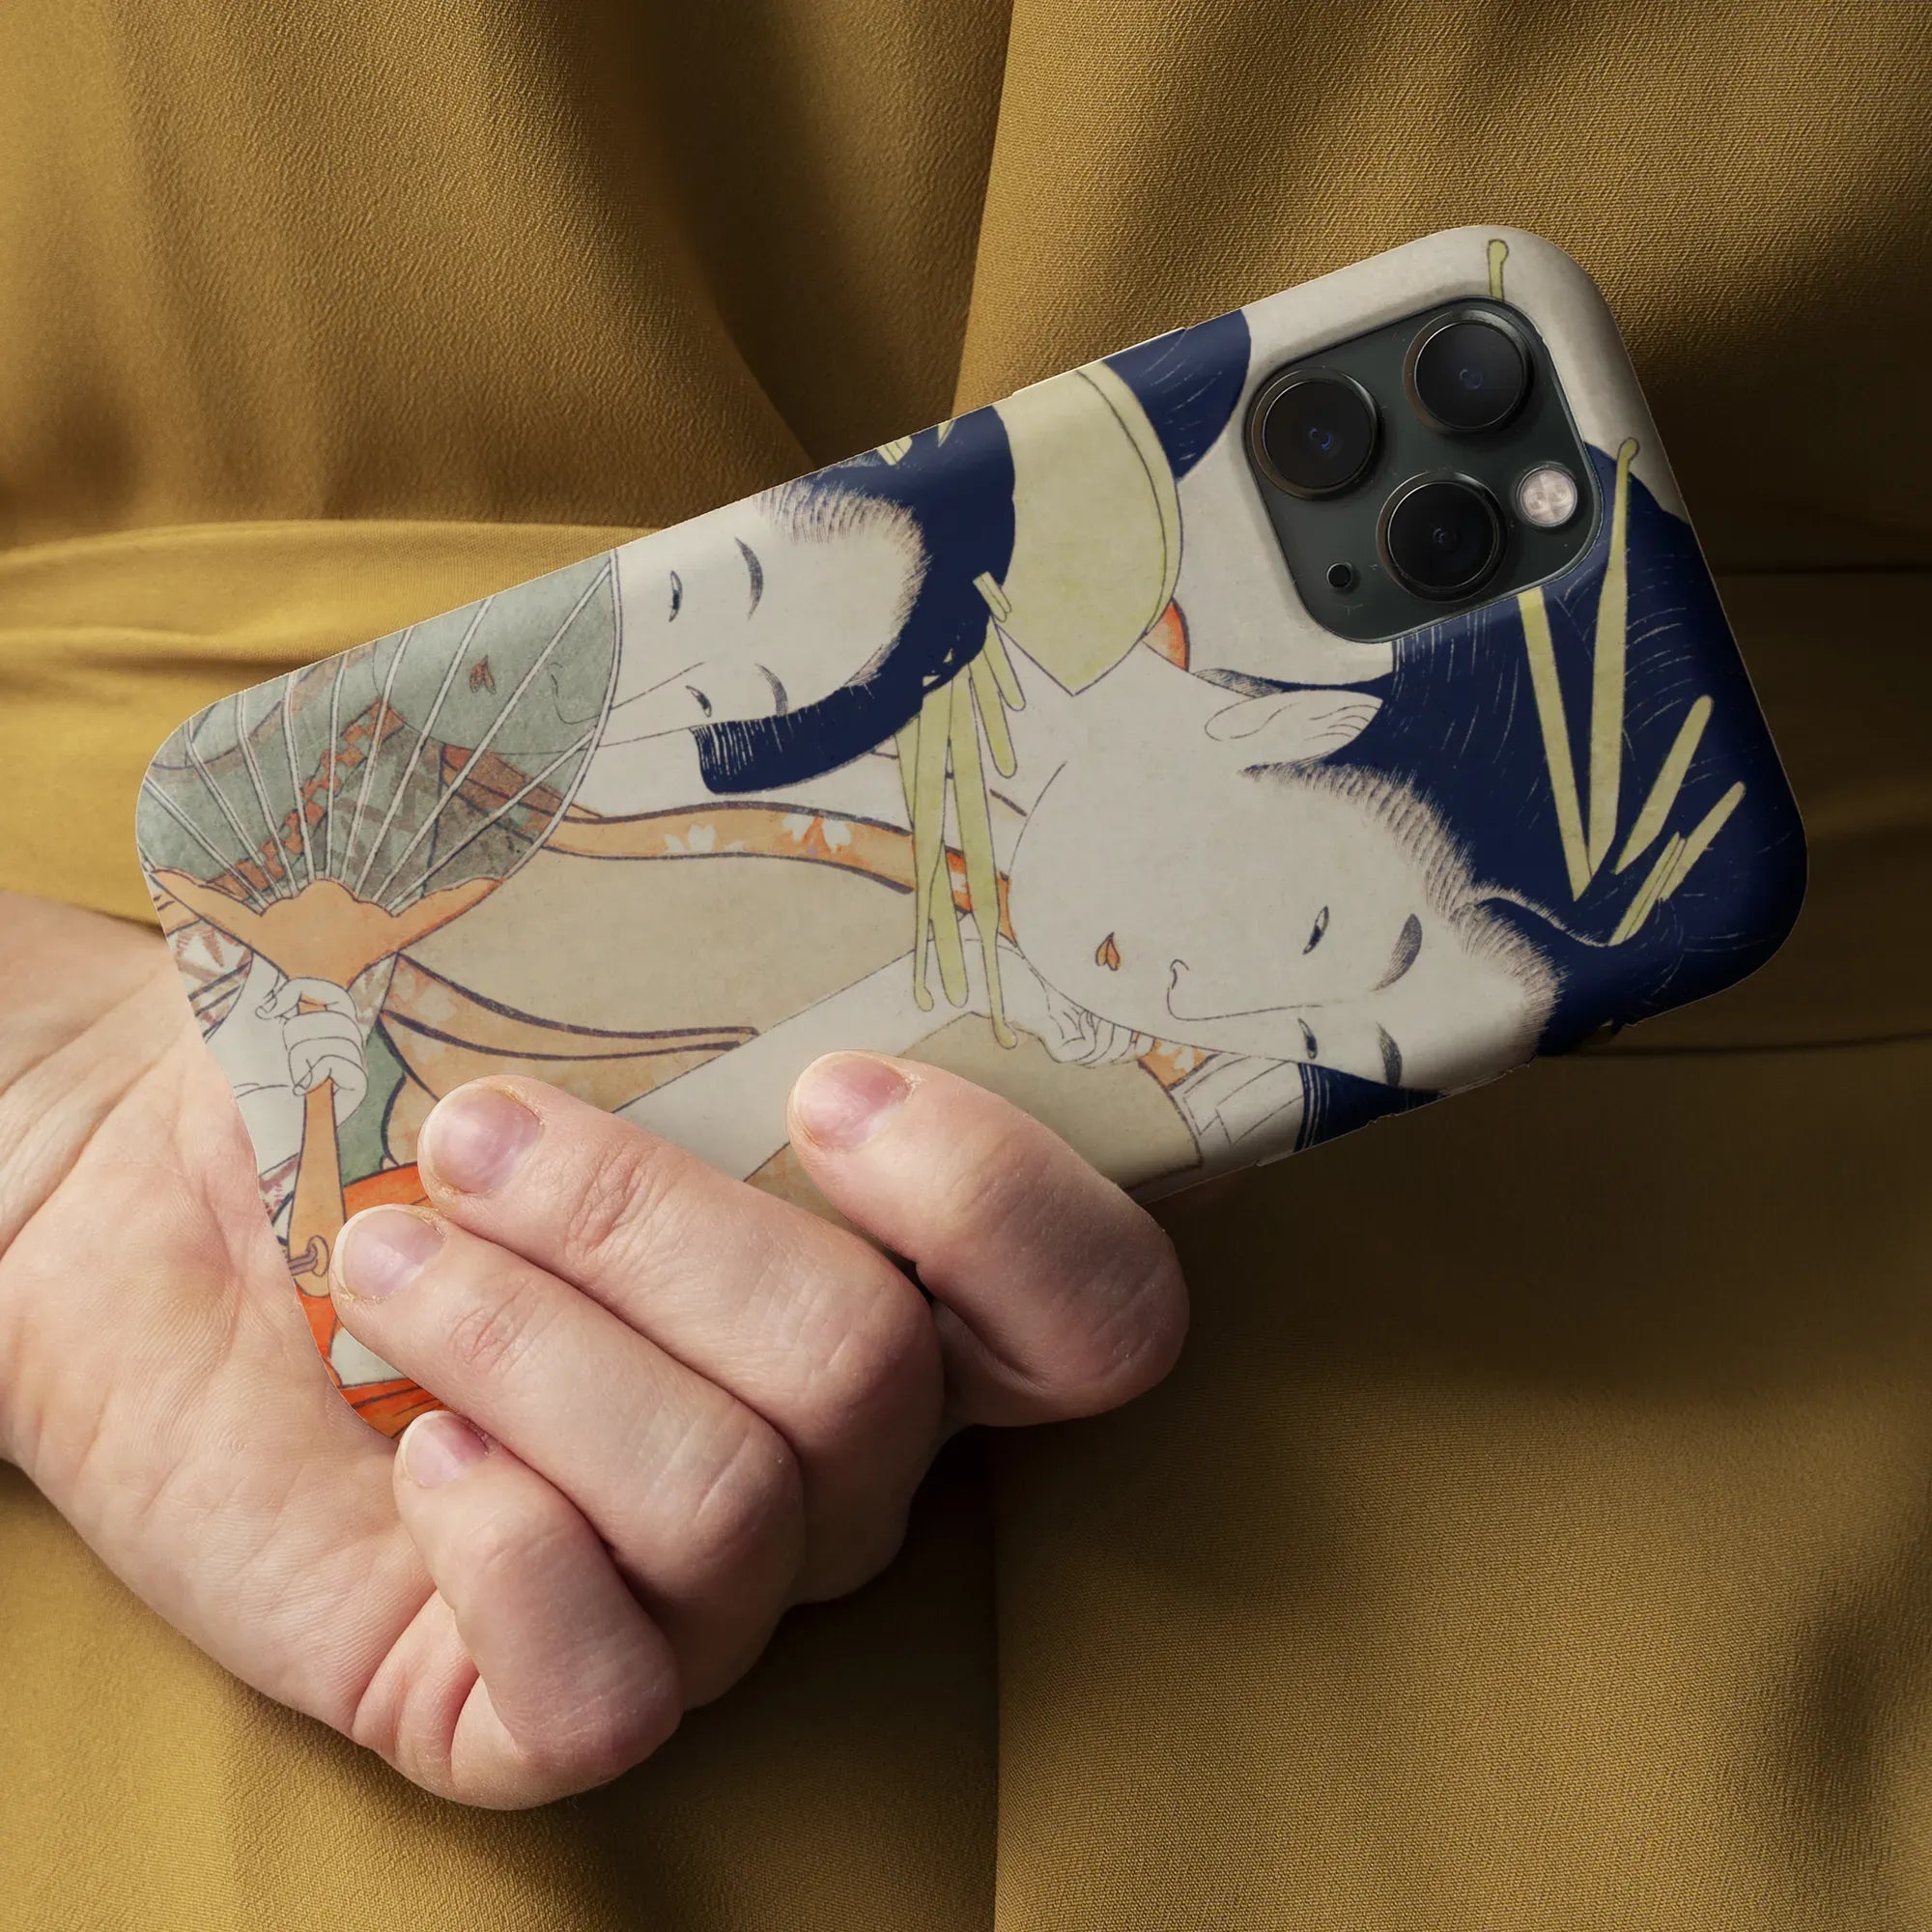 Chojiya Japanese Aesthetic Art Phone Case - Utamaro Kitagawa - Mobile Phone Cases - Aesthetic Art